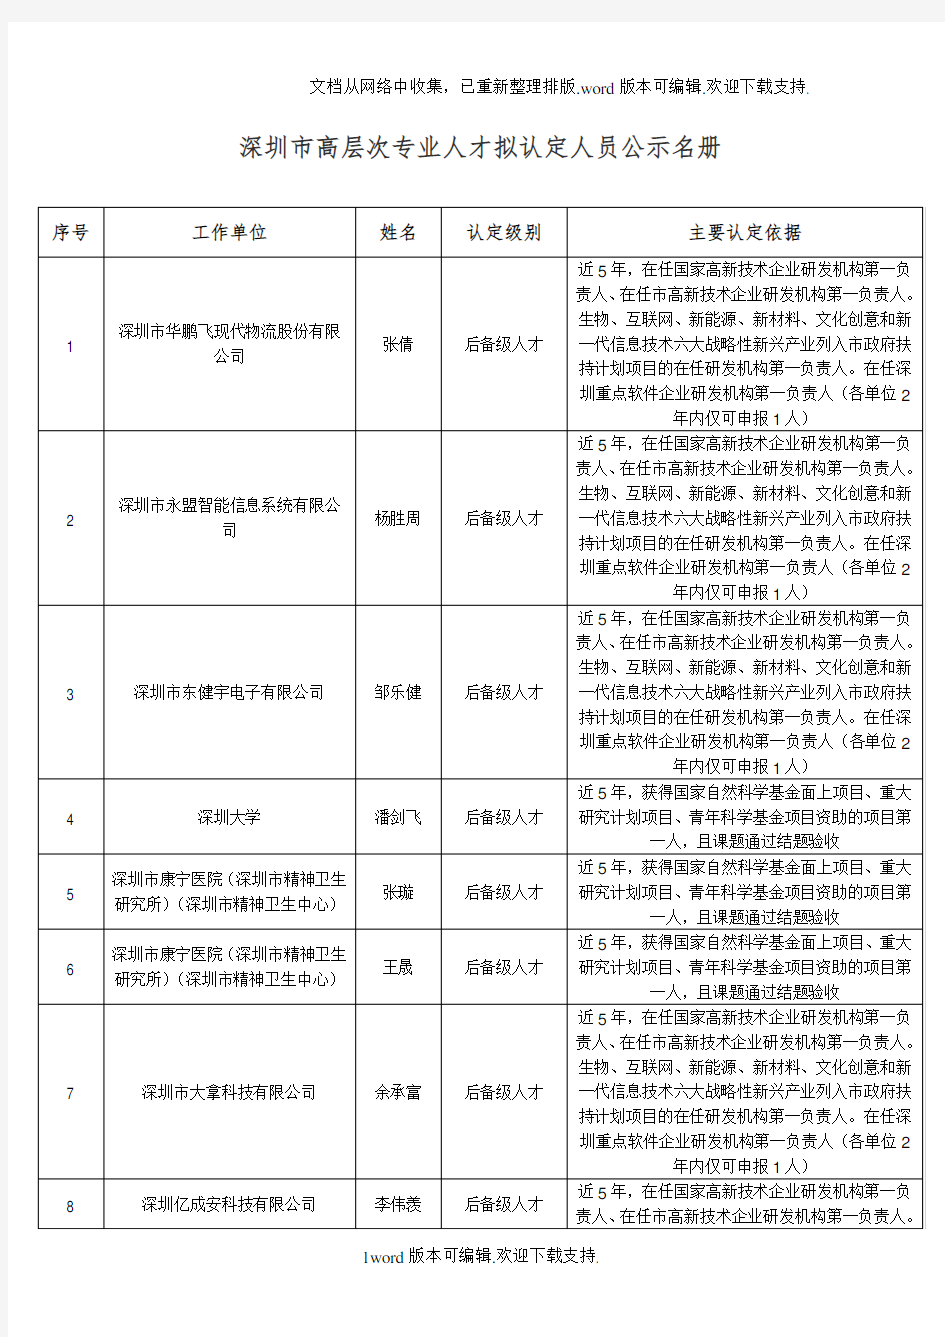 深圳市高层次专业人才拟认定人员公示名册